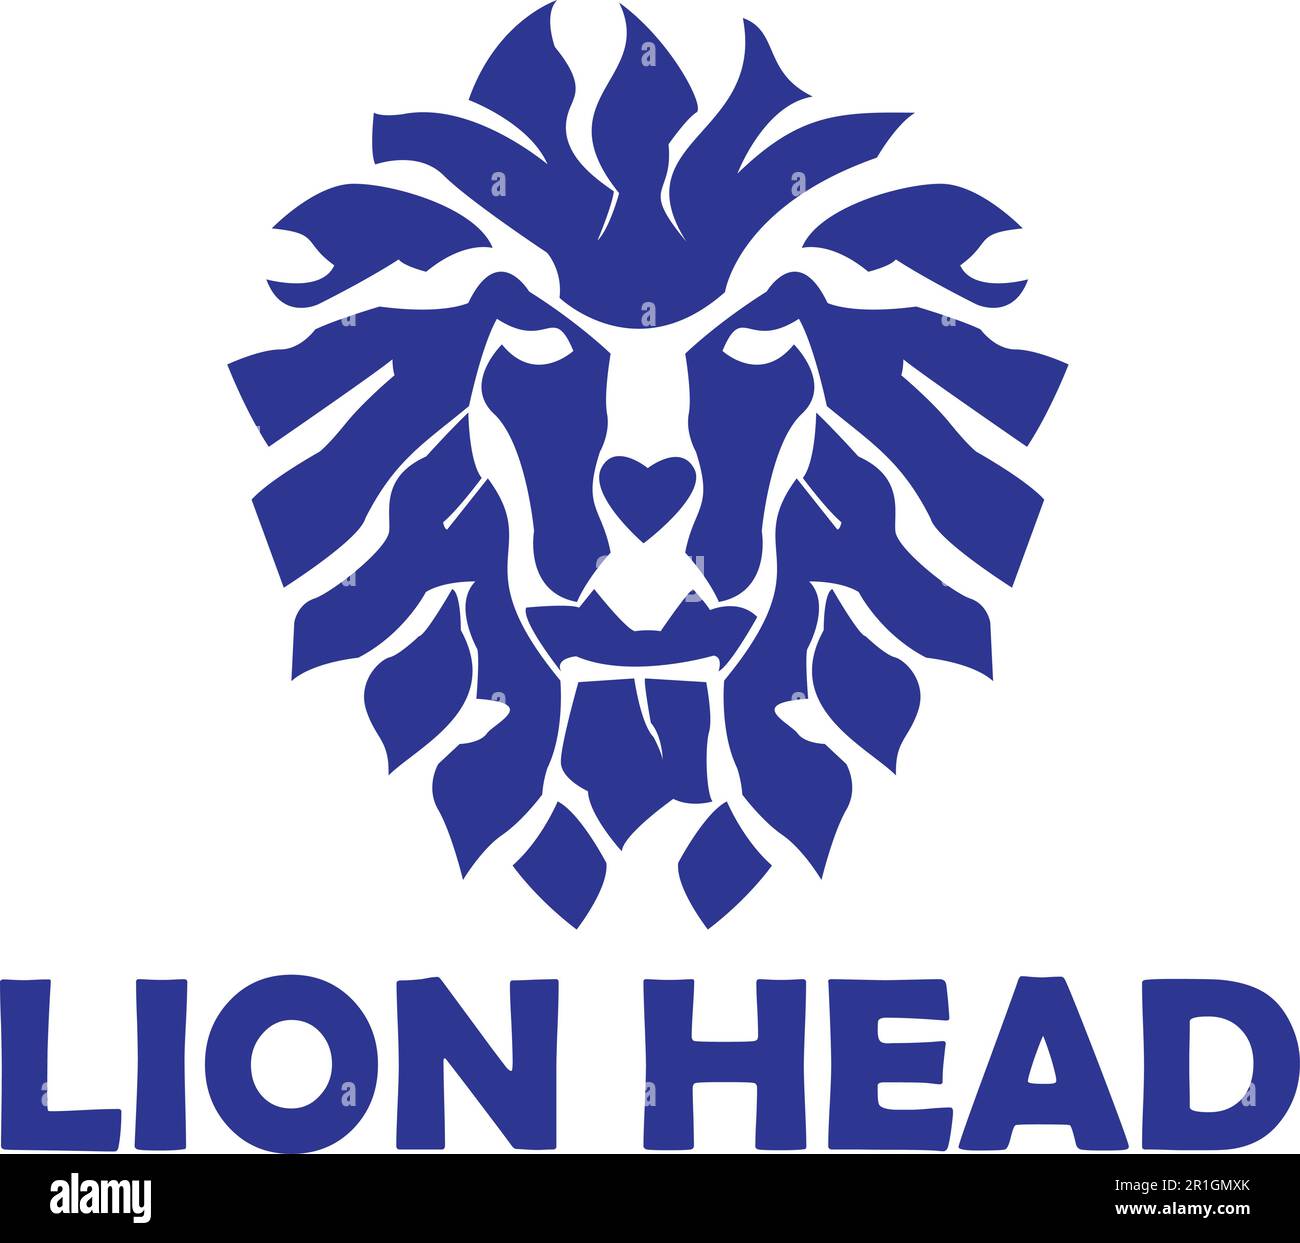 Il modello del logo Lion Head realizzato con forme astratte è un file vettoriale di alta qualità che può essere utilizzato per vari scopi di progettazione. Presenta una bellezza Illustrazione Vettoriale